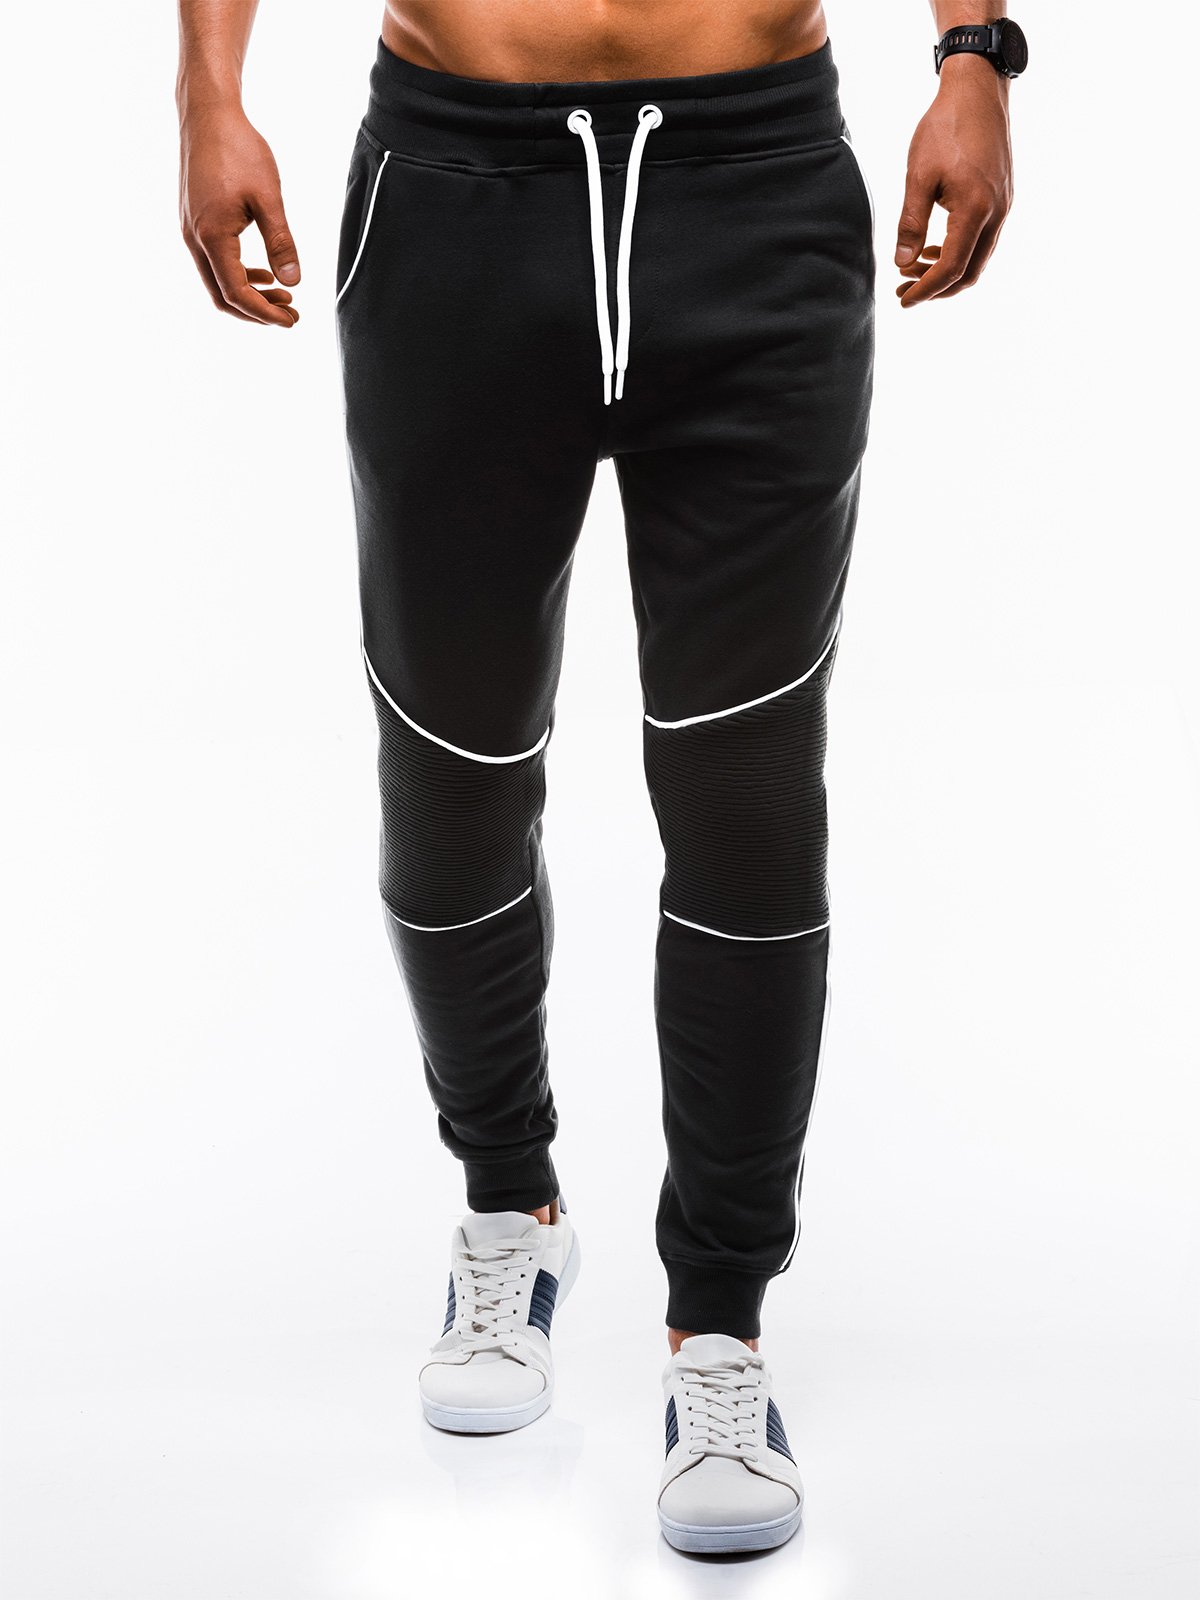 Men's sweatpants P736 - black | MODONE wholesale - Clothing For Men